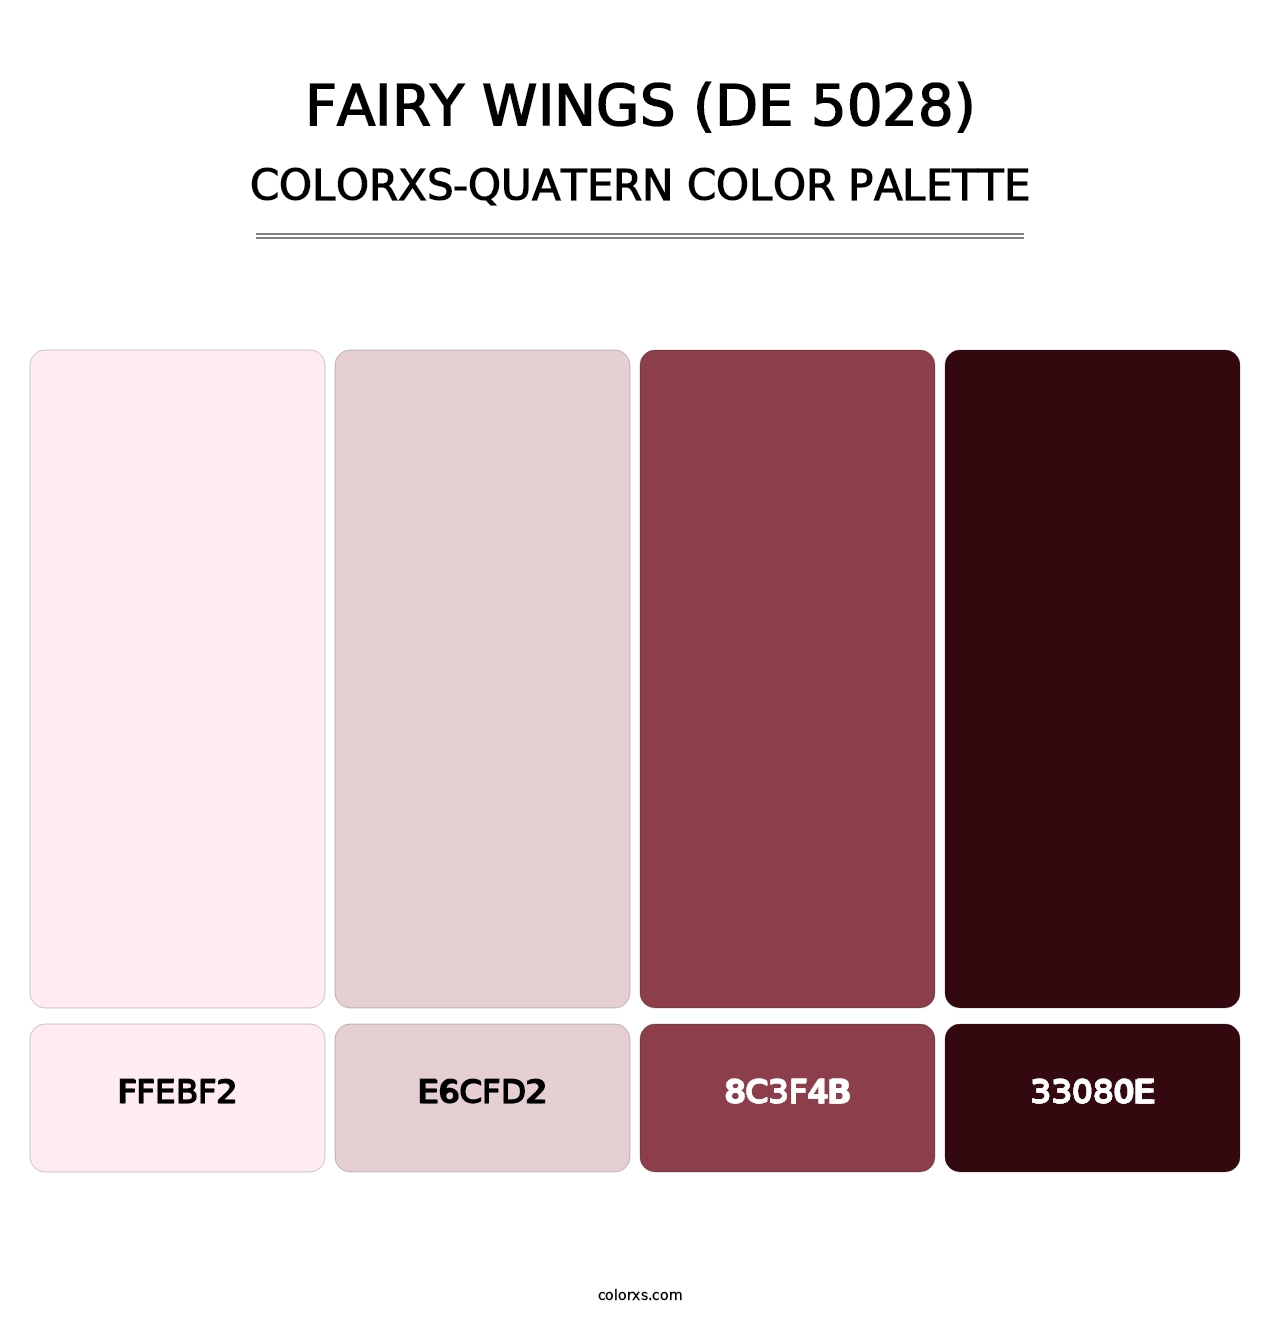 Fairy Wings (DE 5028) - Colorxs Quatern Palette